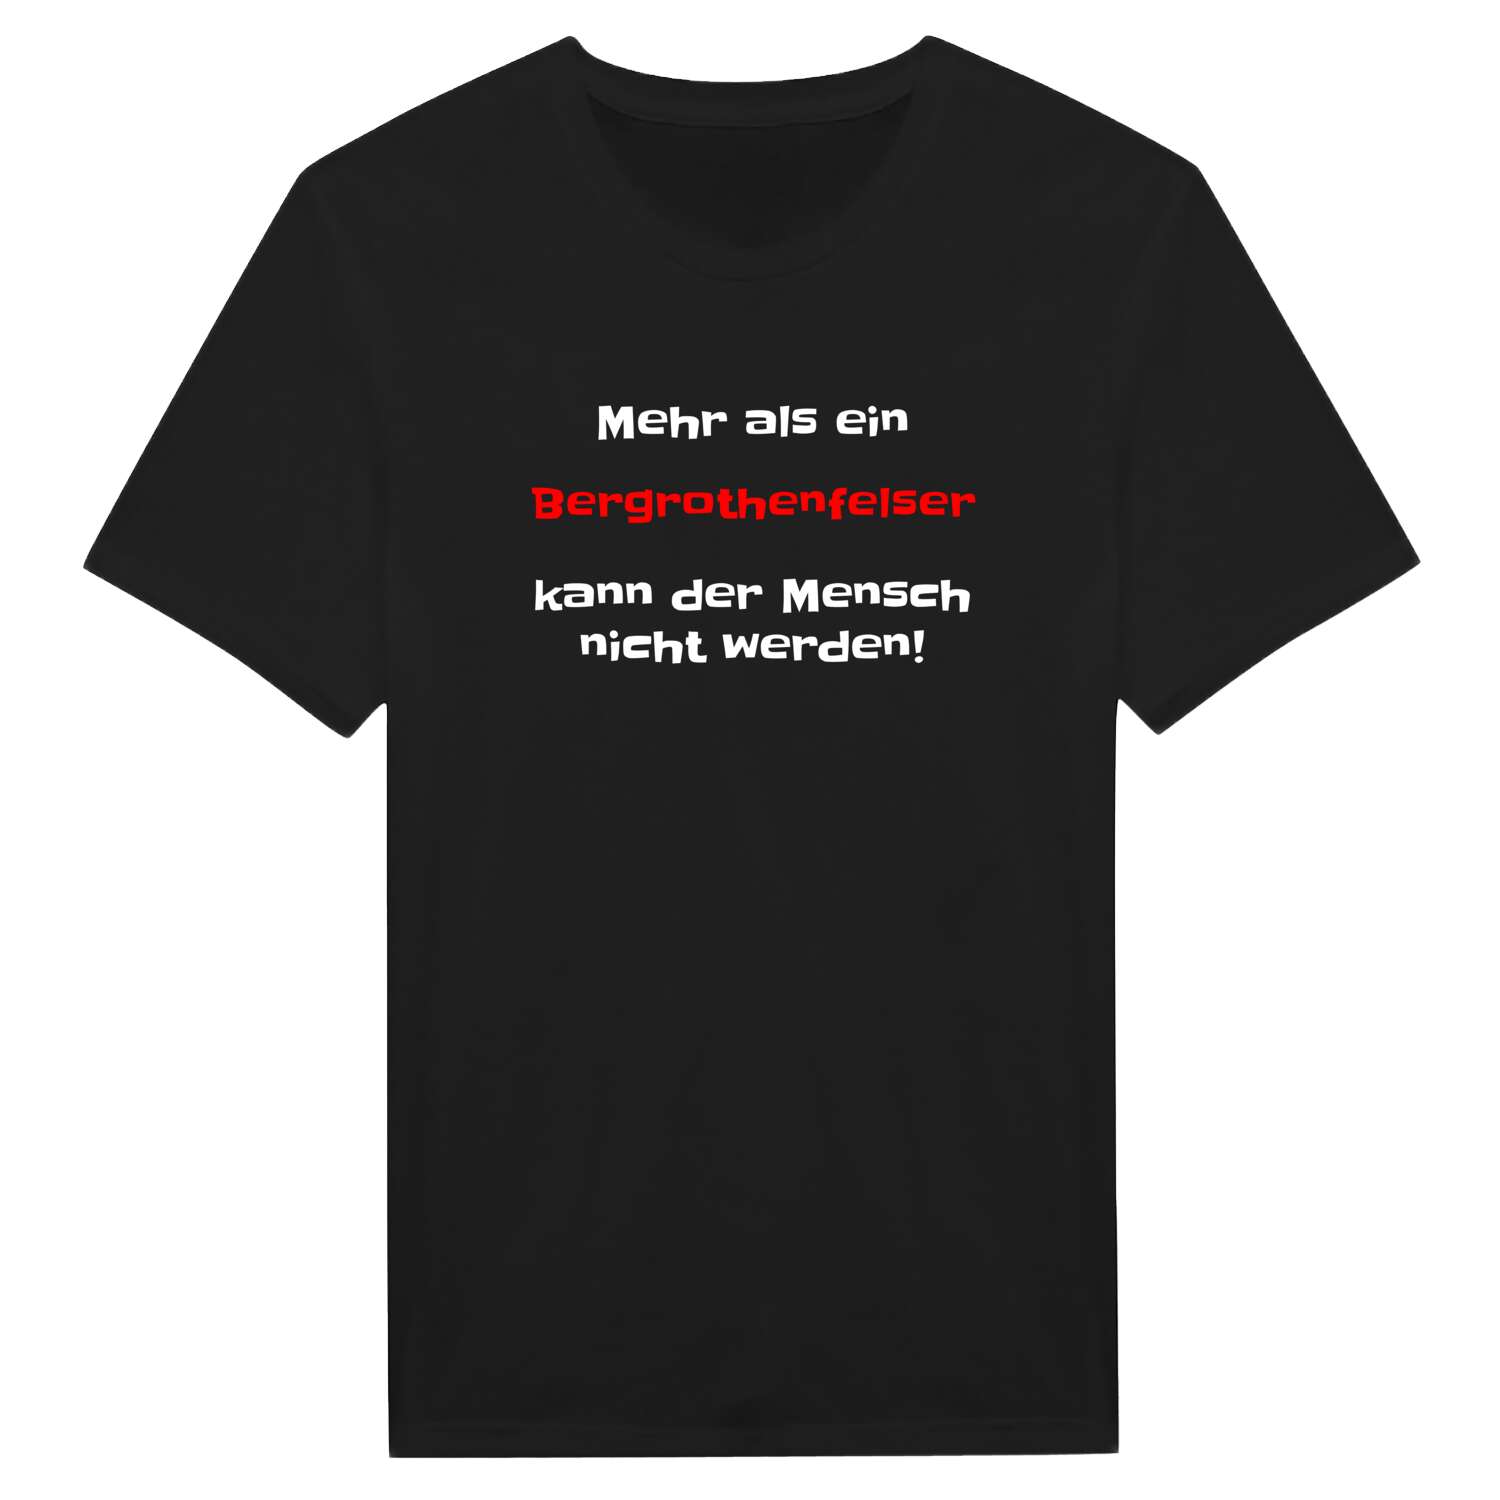 Bergrothenfels T-Shirt »Mehr als ein«